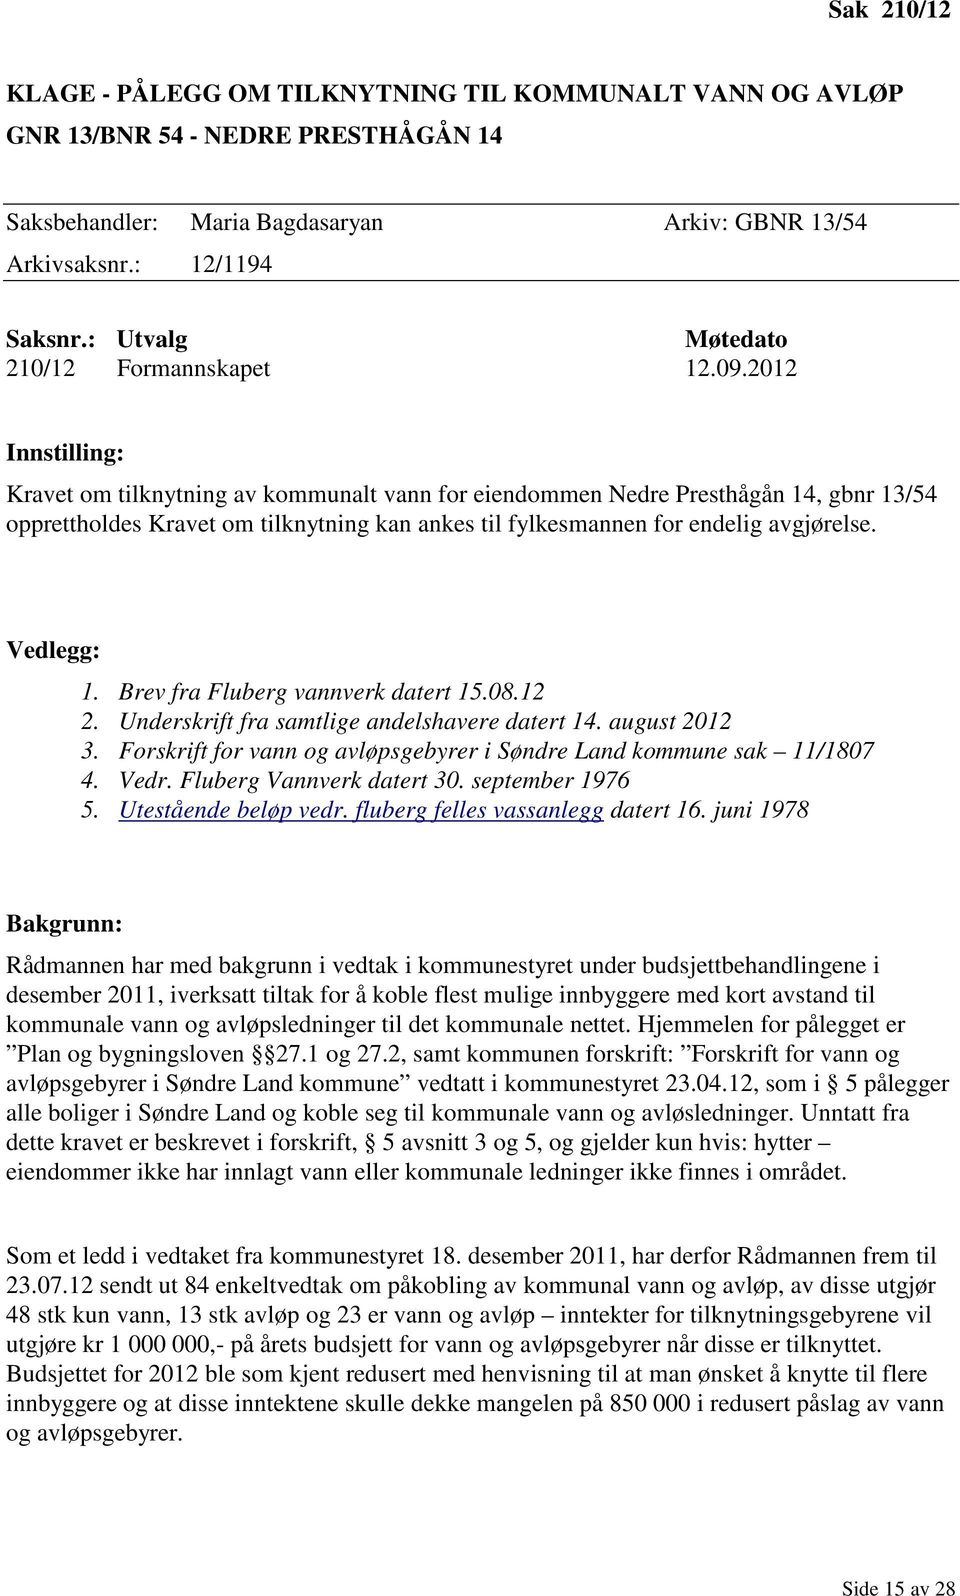 2012 Innstilling: Kravet om tilknytning av kommunalt vann for eiendommen Nedre Presthågån 14, gbnr 13/54 opprettholdes Kravet om tilknytning kan ankes til fylkesmannen for endelig avgjørelse.